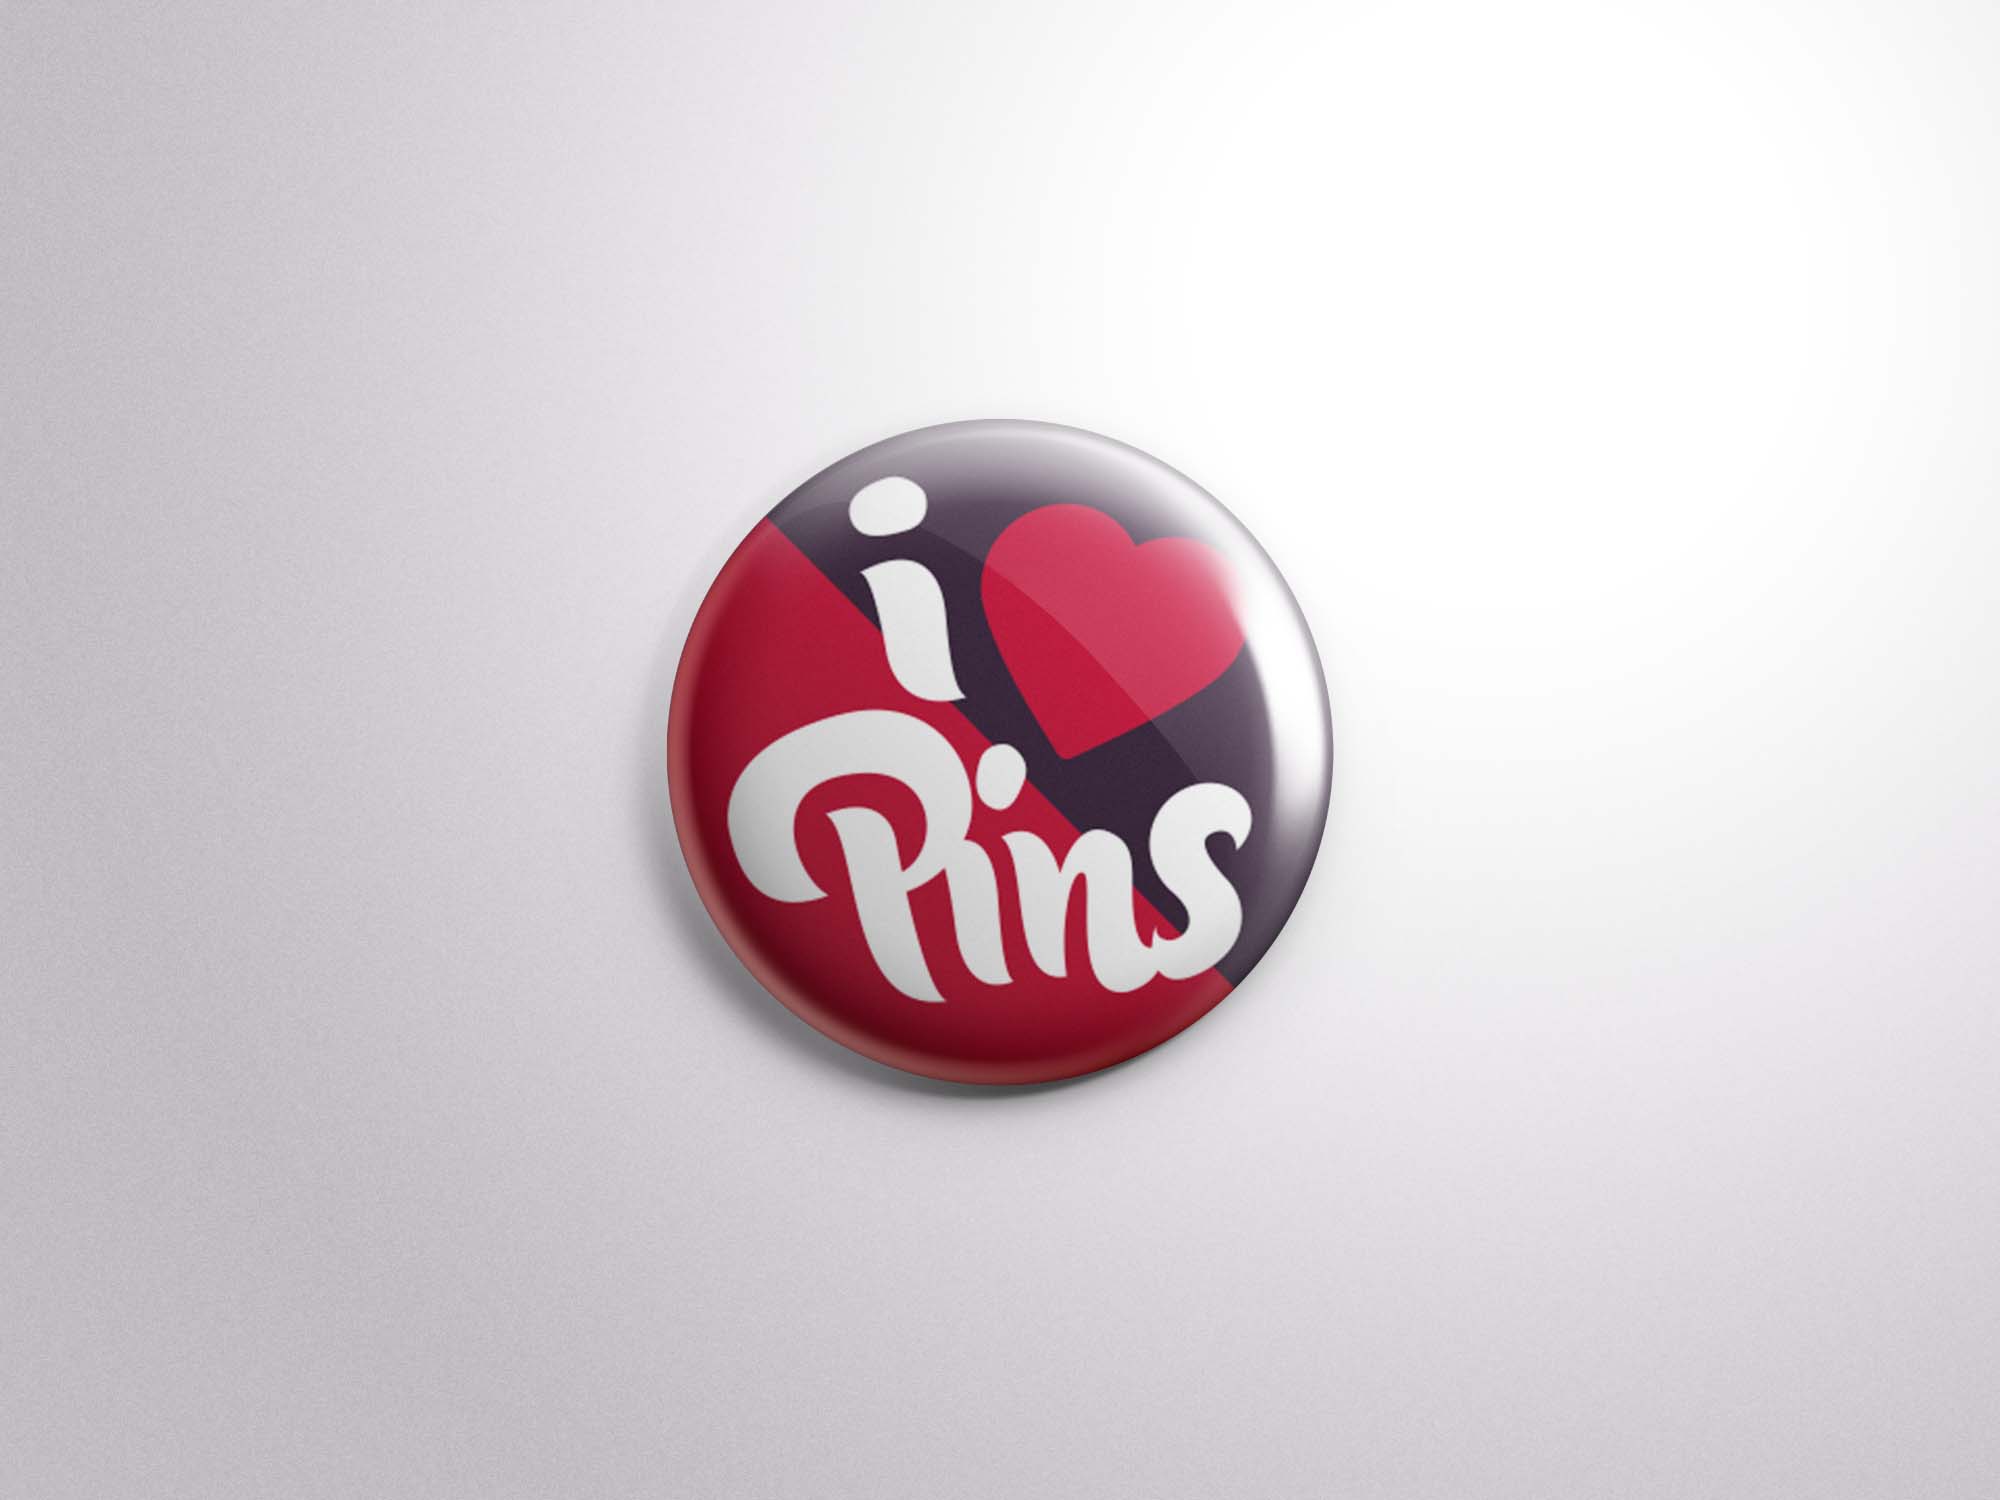 Button Badge Pin Mockup